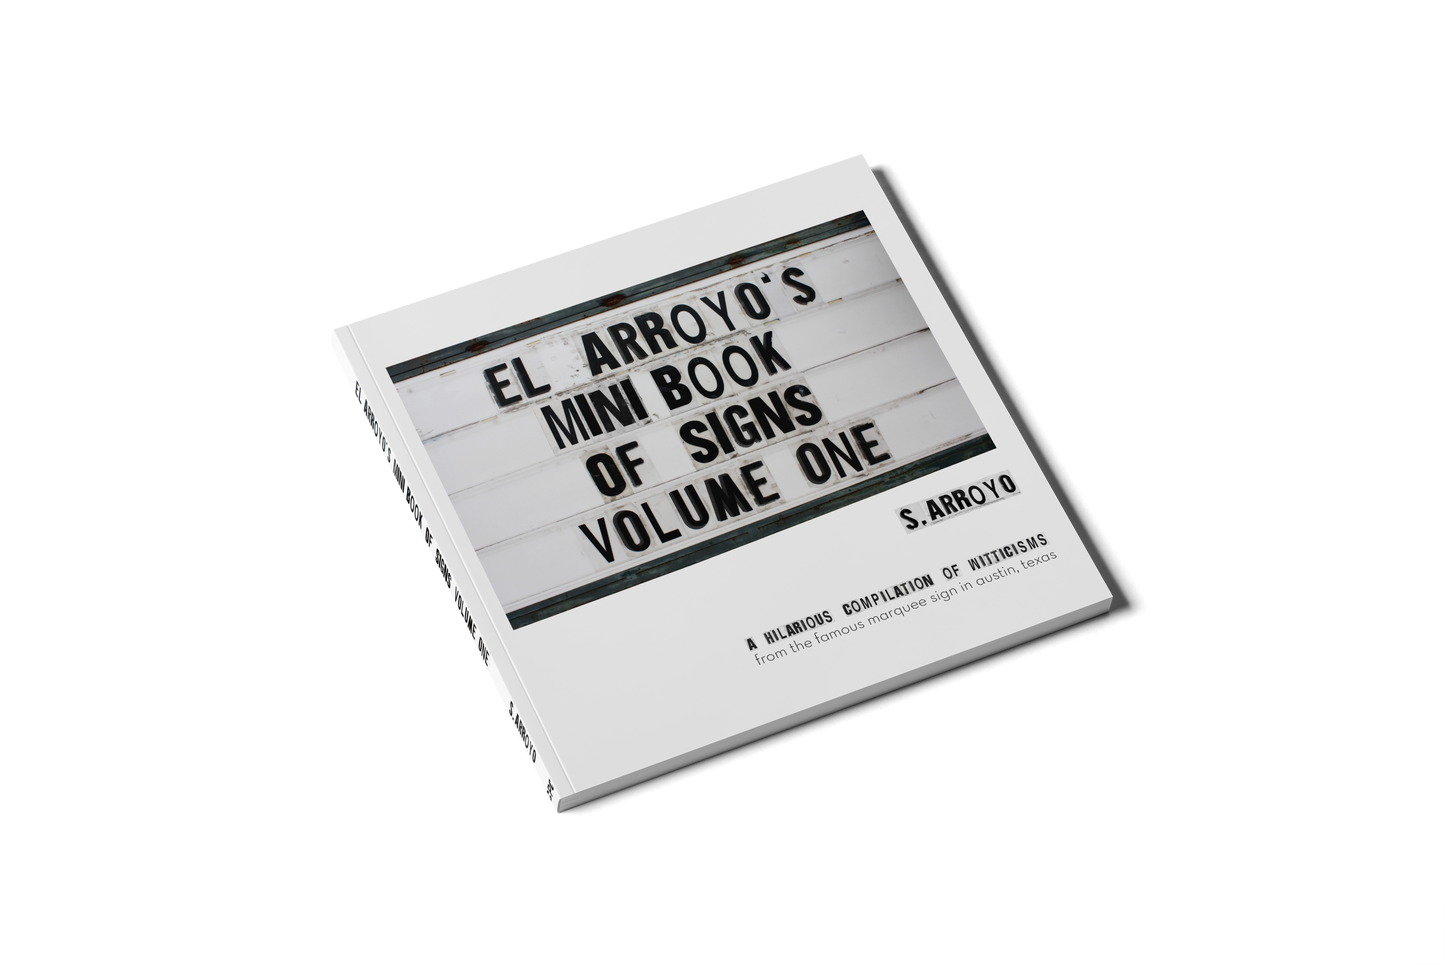 El Arroyo - El Arroyo's Mini Book of Signs Volume One